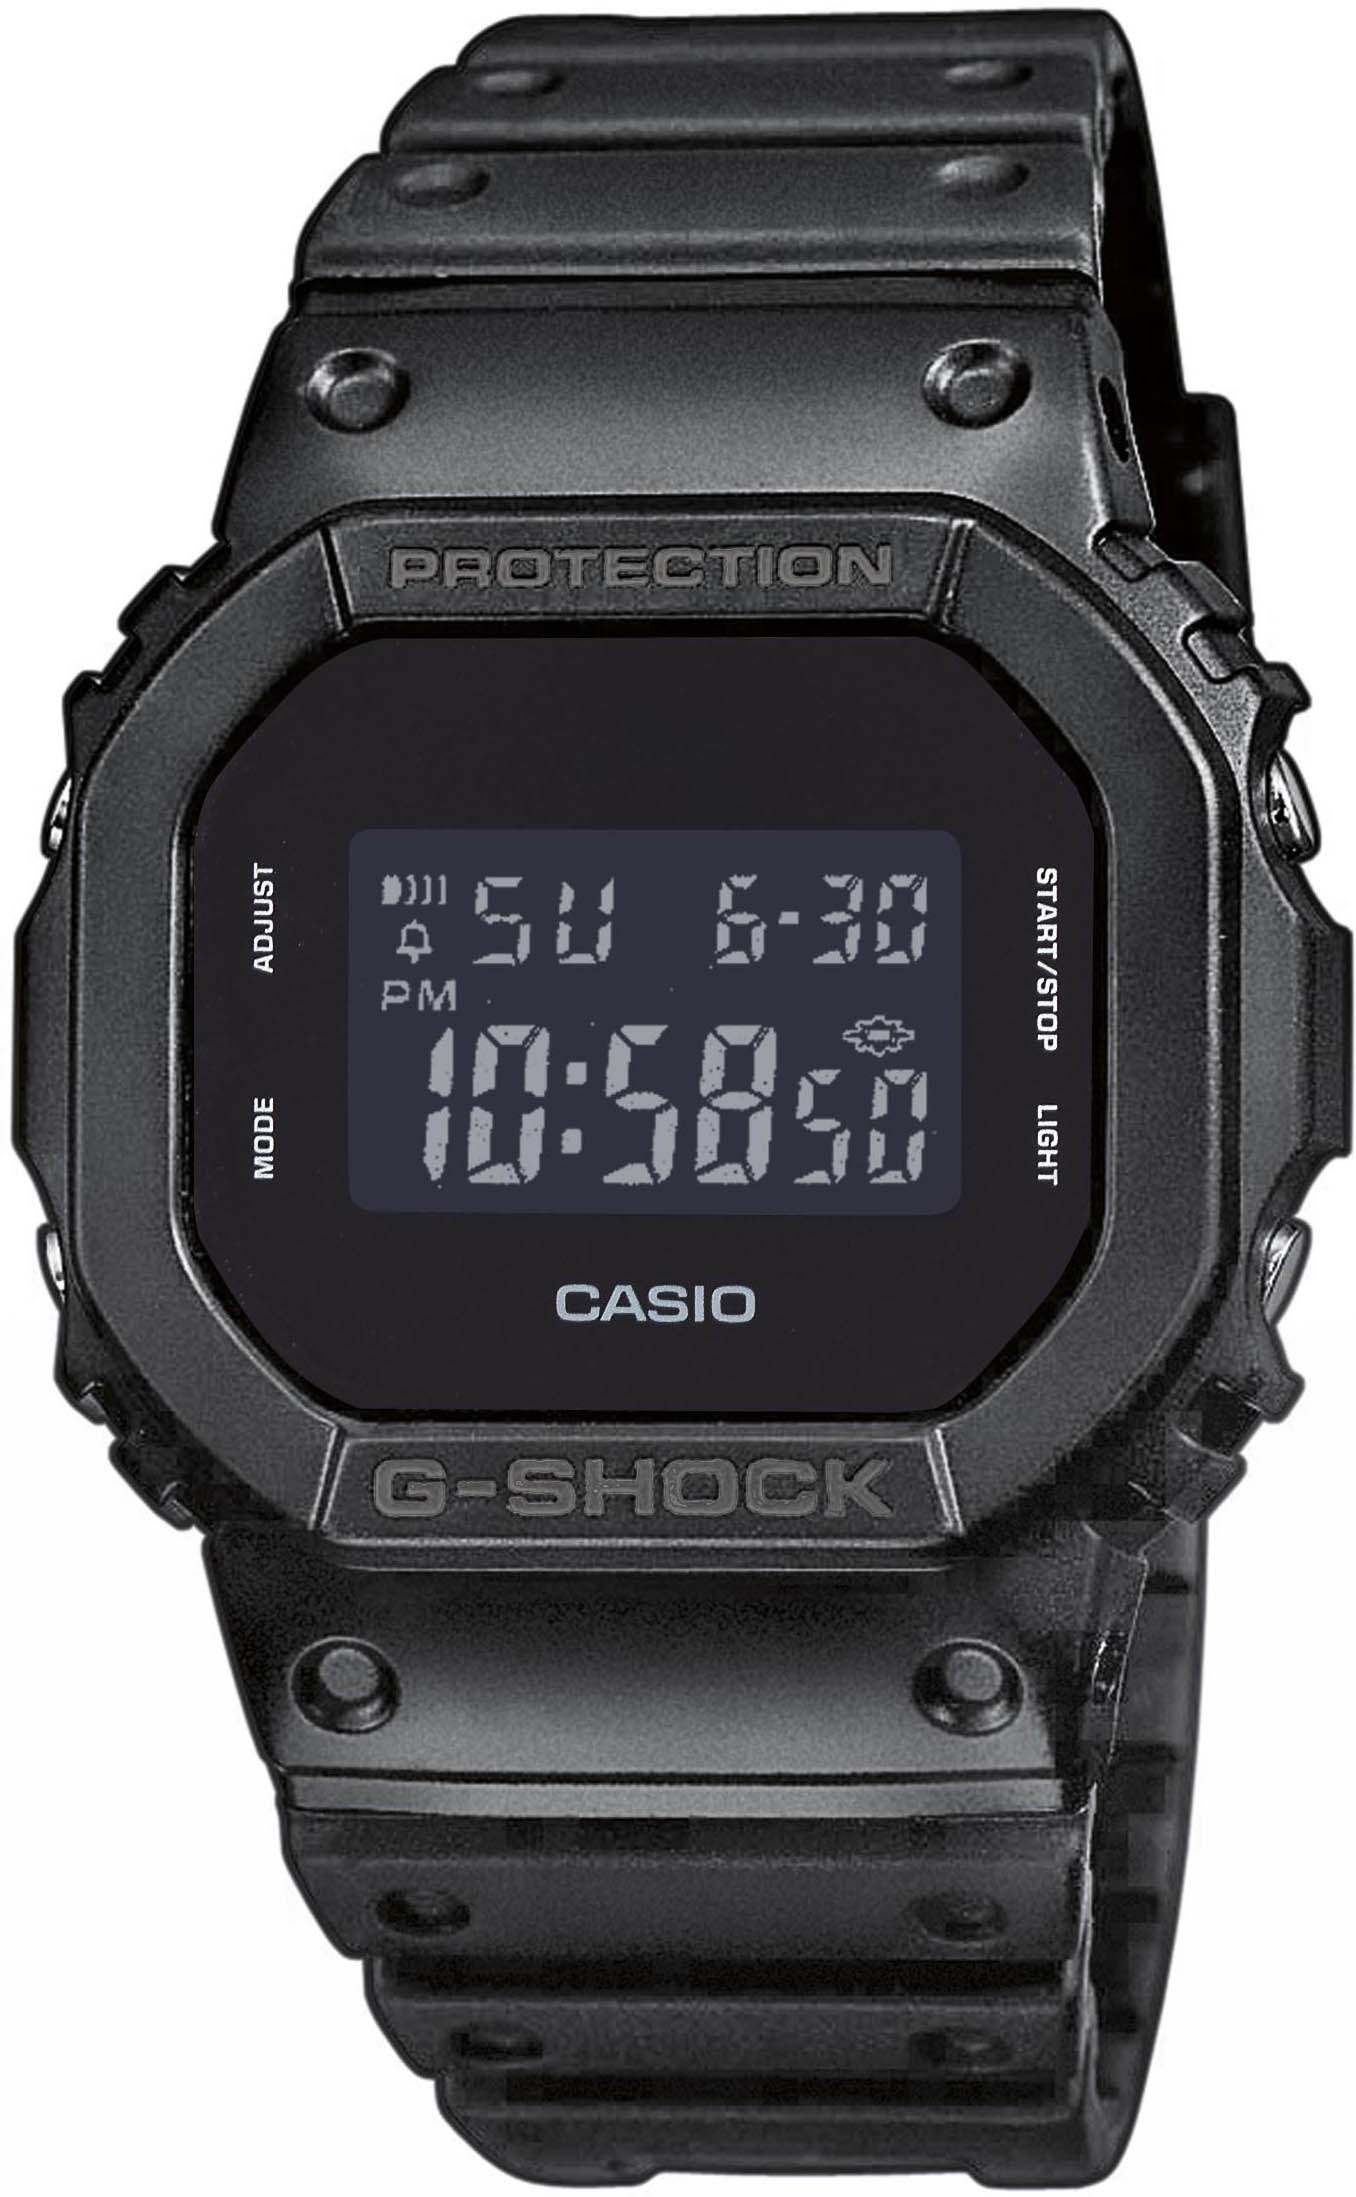 G-Shock DW-5600BB-1ER - Casio Watch • Watchard.com